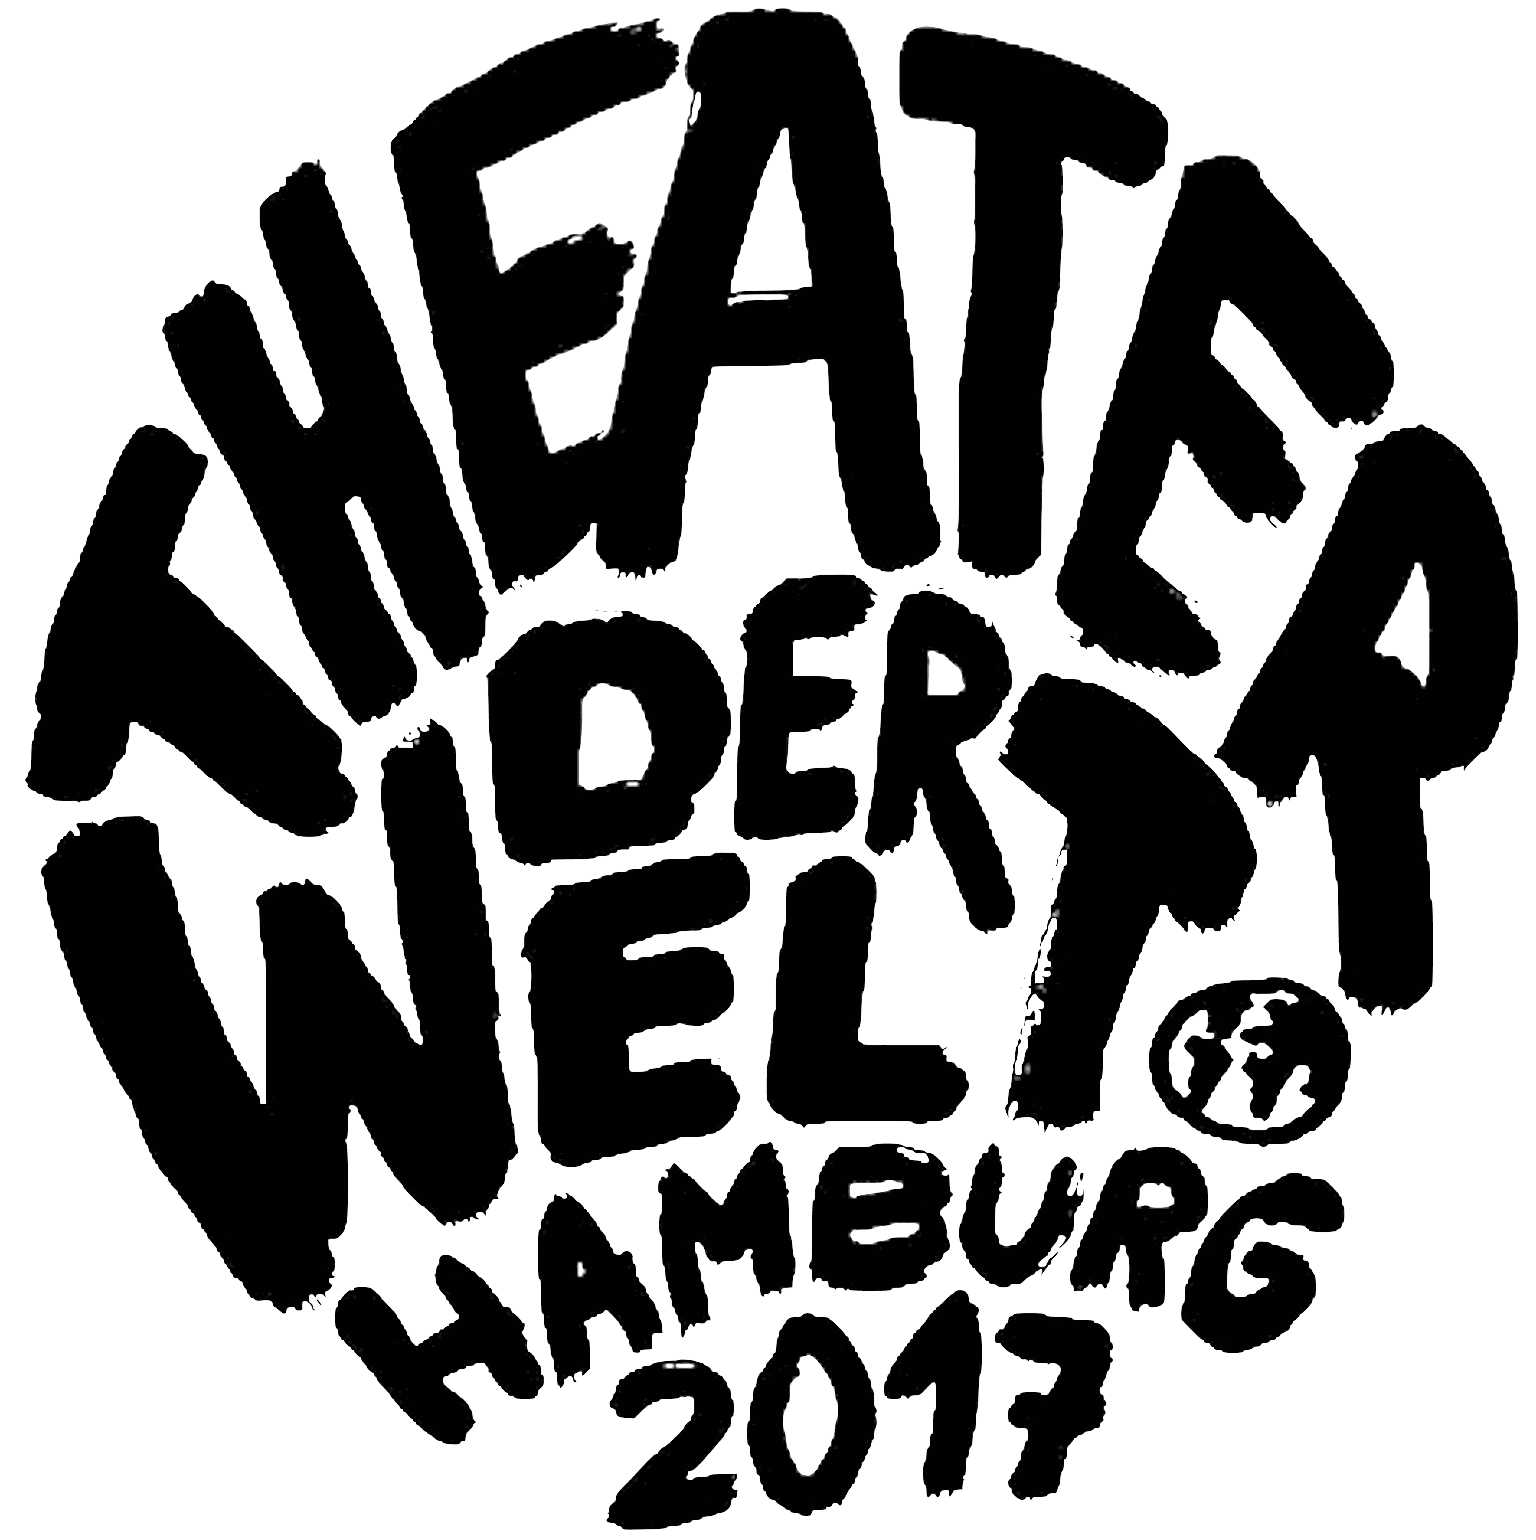 Demo-Logo